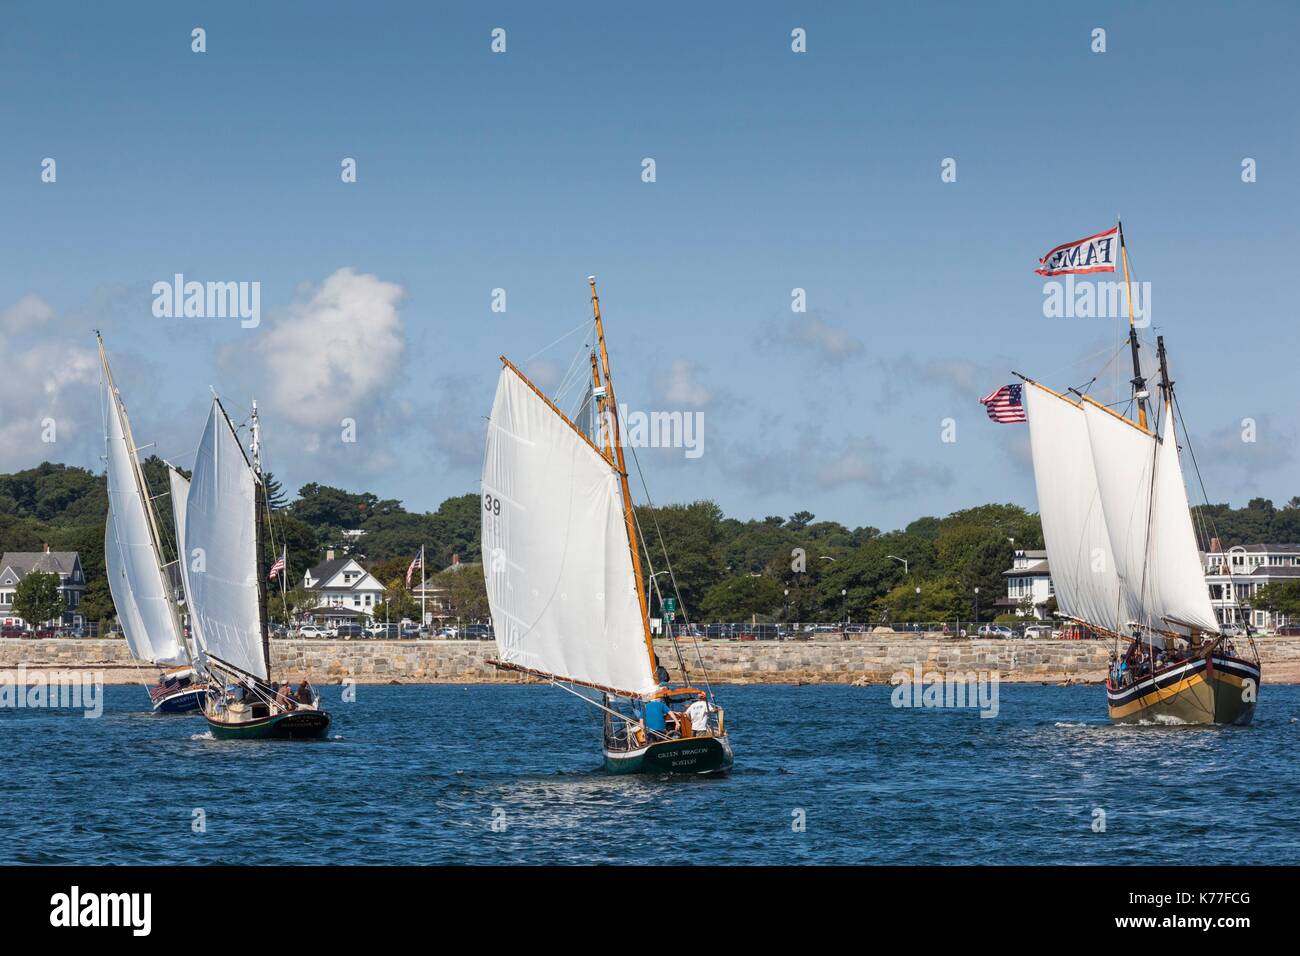 United States, Massachusetts, Cape Ann, Gloucester, America's Oldest Seaport, Gloucester Schooner Festival, schooner sailing ships Stock Photo